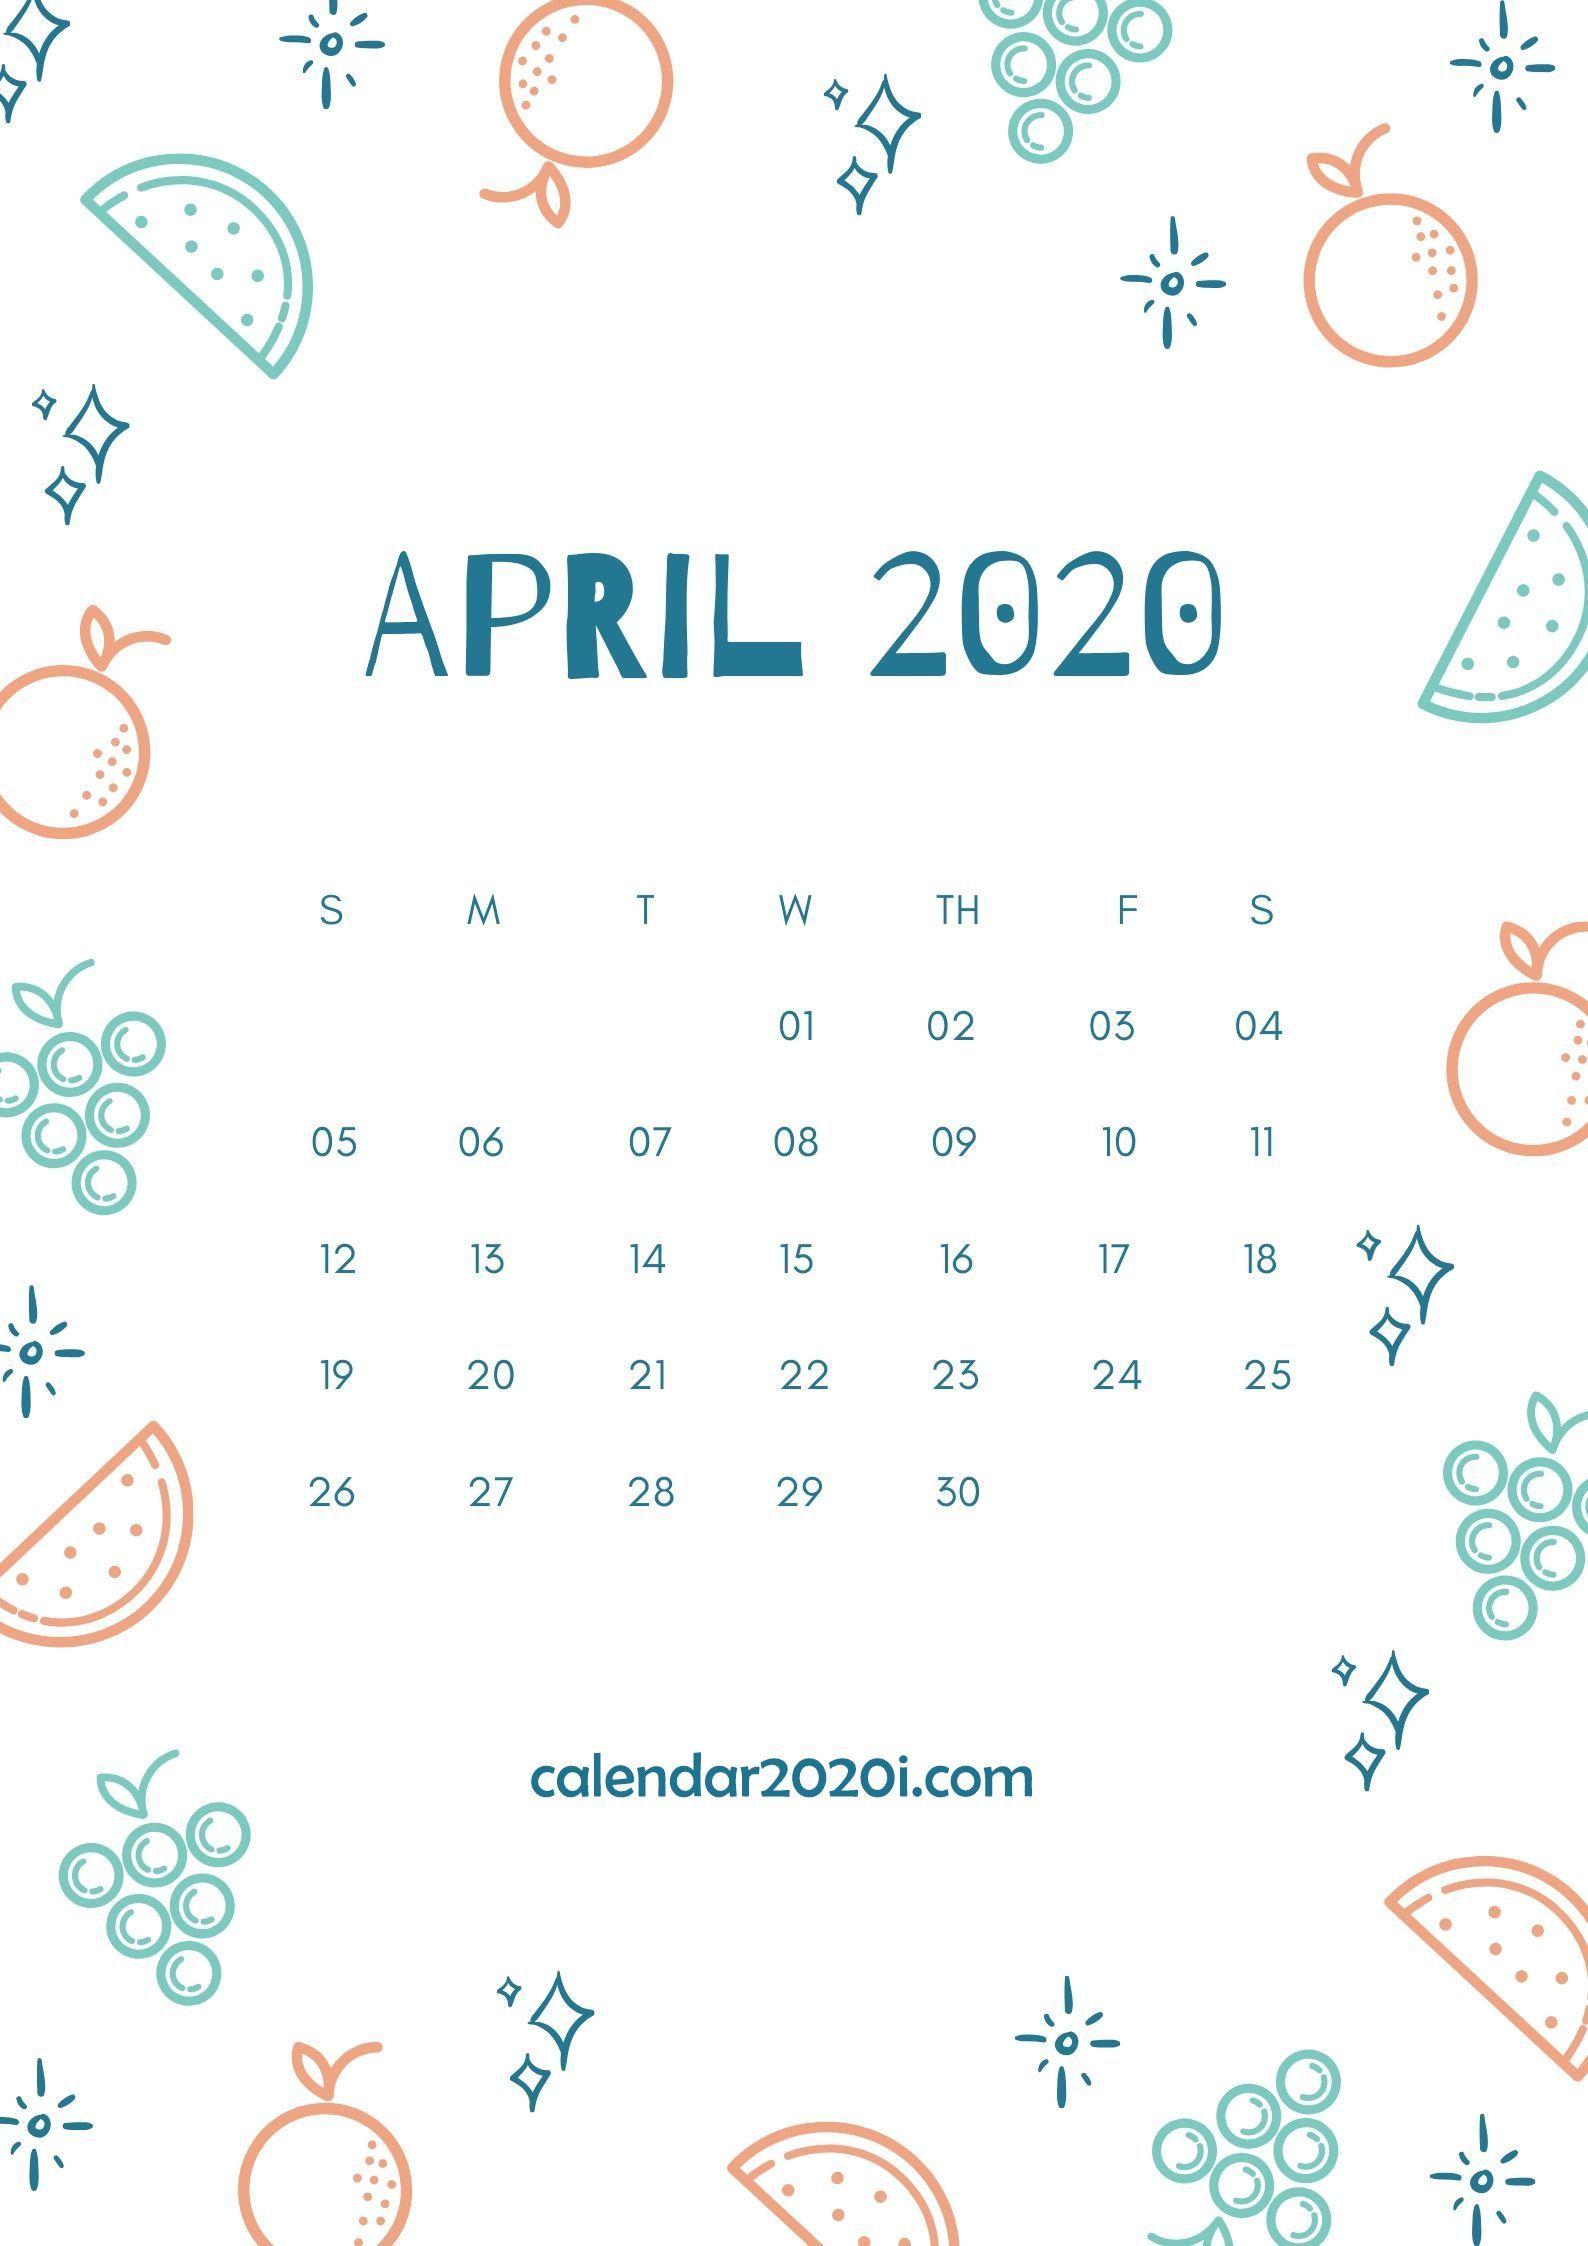 April 2020 Calendar Wallpaper Free April 2020 Calendar